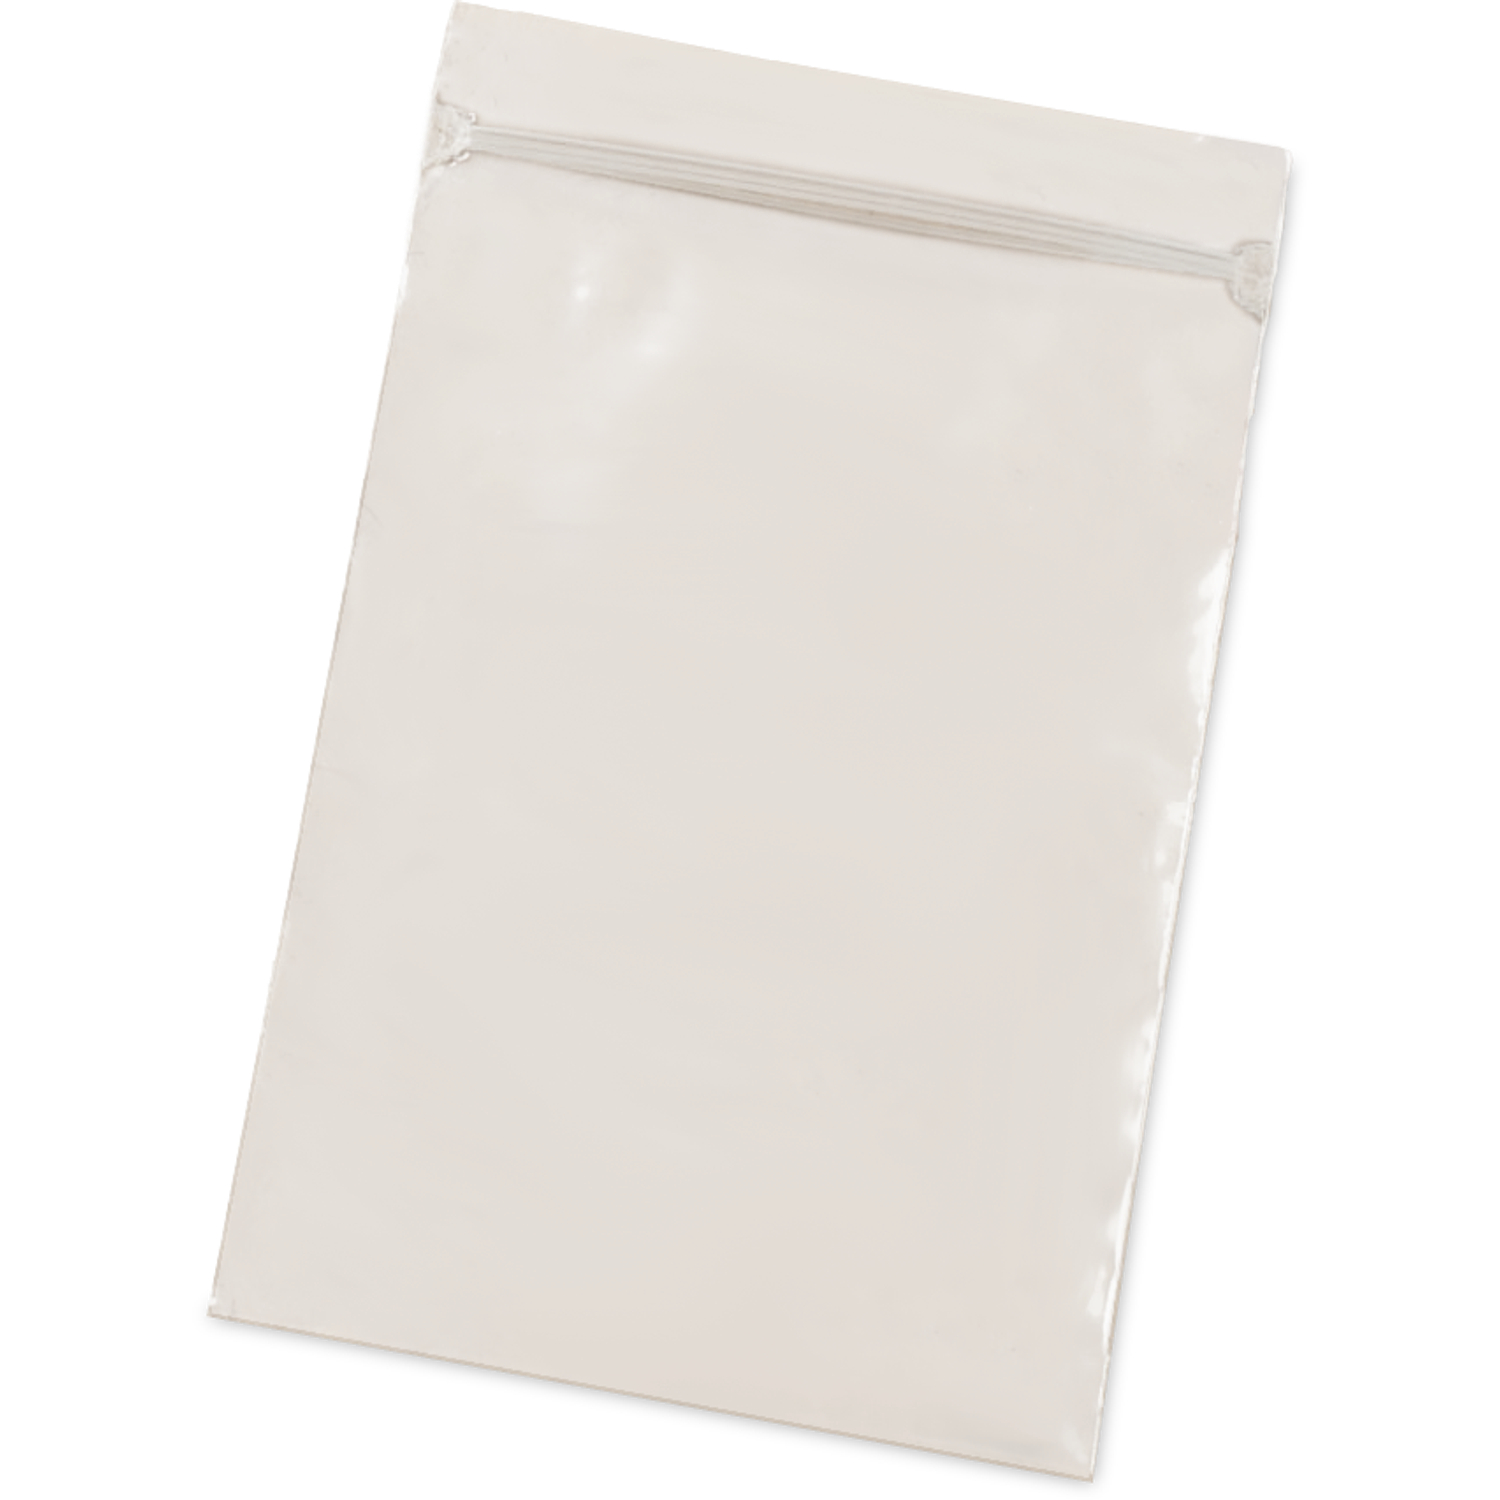 4x4 Plastic Zip Top Bags (Pack of 100), ziplock jewelry bags